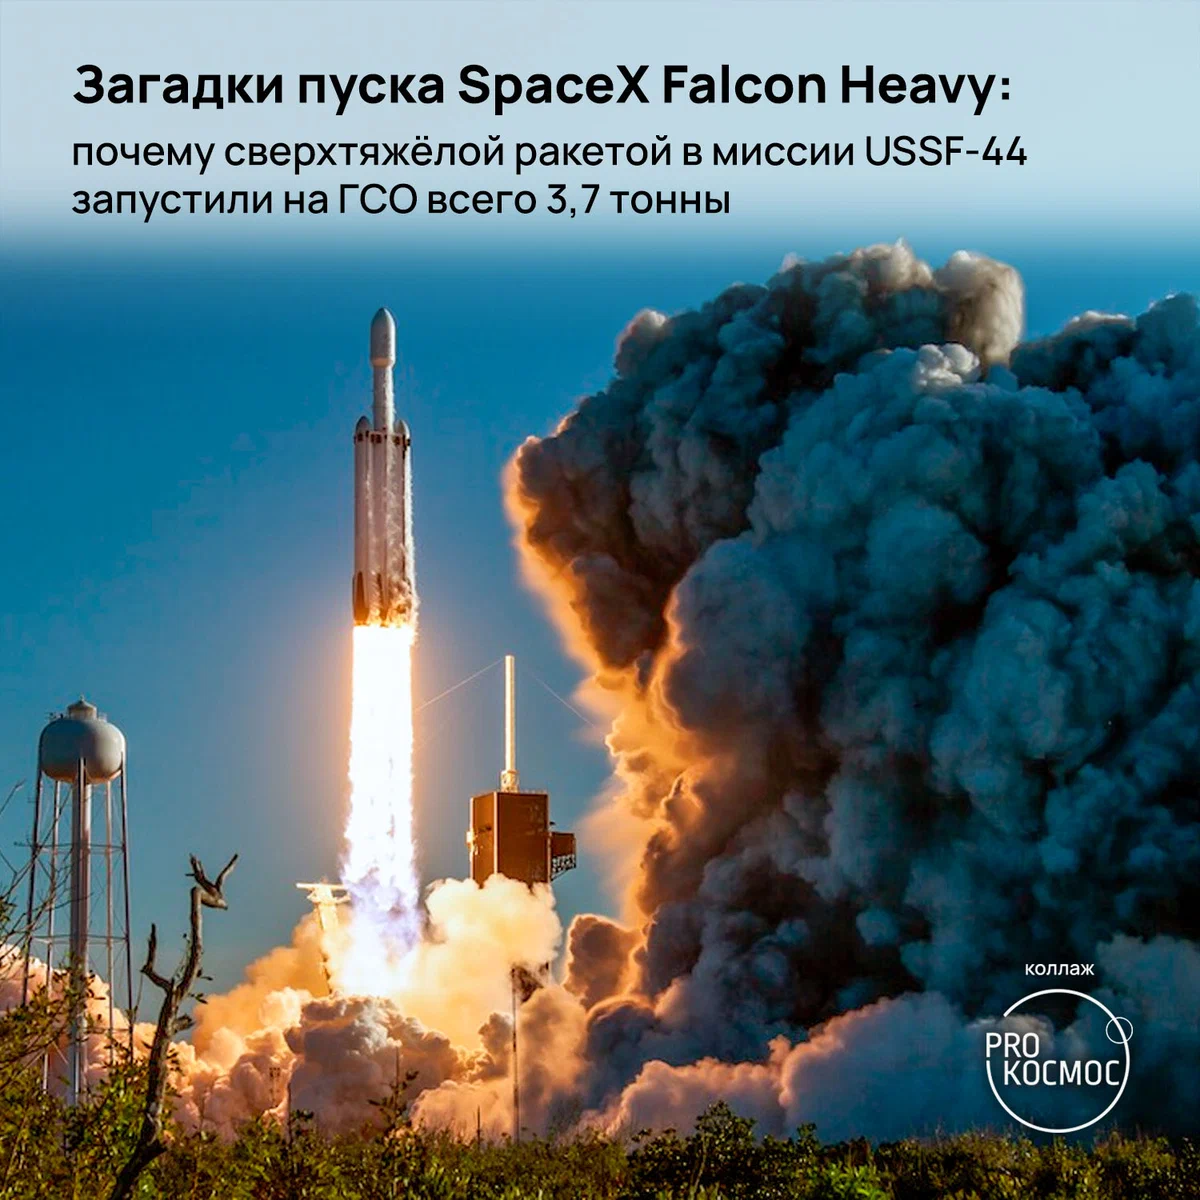 Загадки пуска SpaceX Falcon Heavy: почему сверхтяжёлой ракетой в миссии USSF-44 запустили на ГСО всего 3,7 тонны height=1200px width=1200px